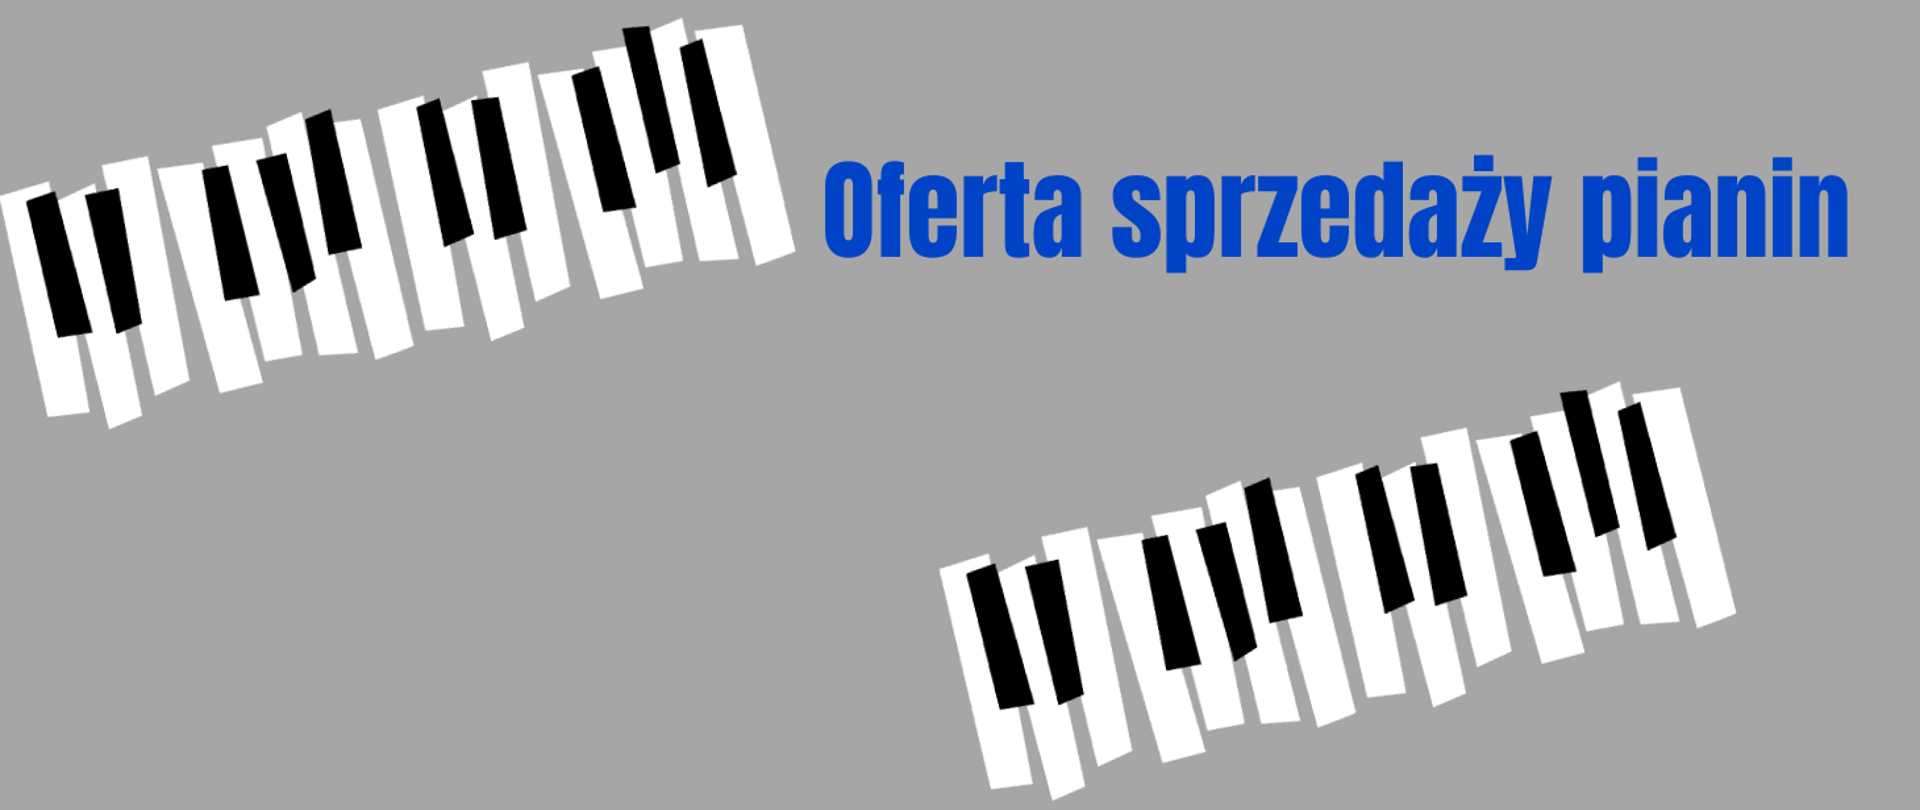 Rysunki klawiatury fortepianowej na jasnoszarym tle. W górnej prawej części obrazu niebieski napis "Oferta sprzedaży pianin"